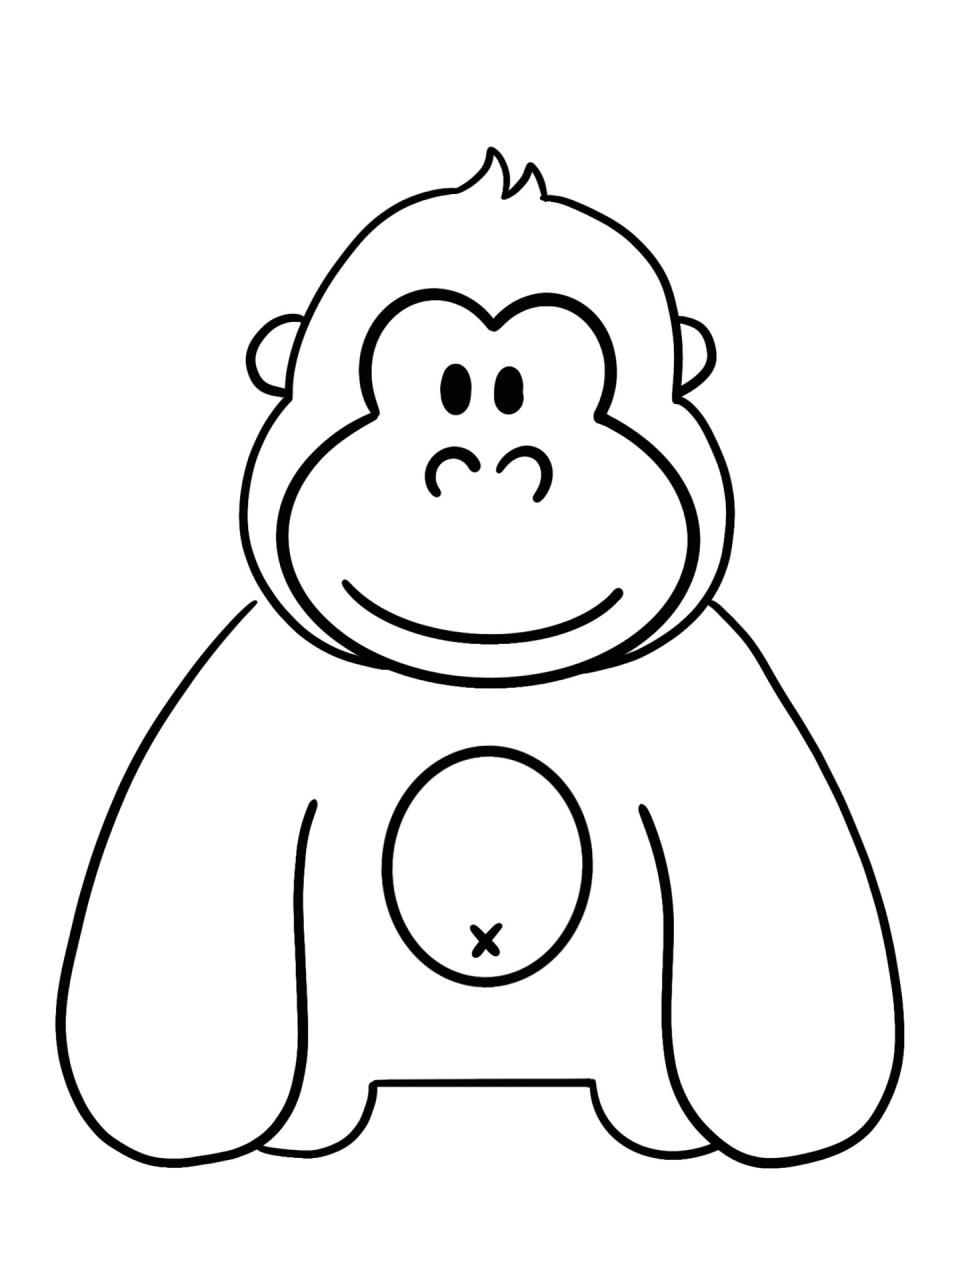 大猩猩画法图片